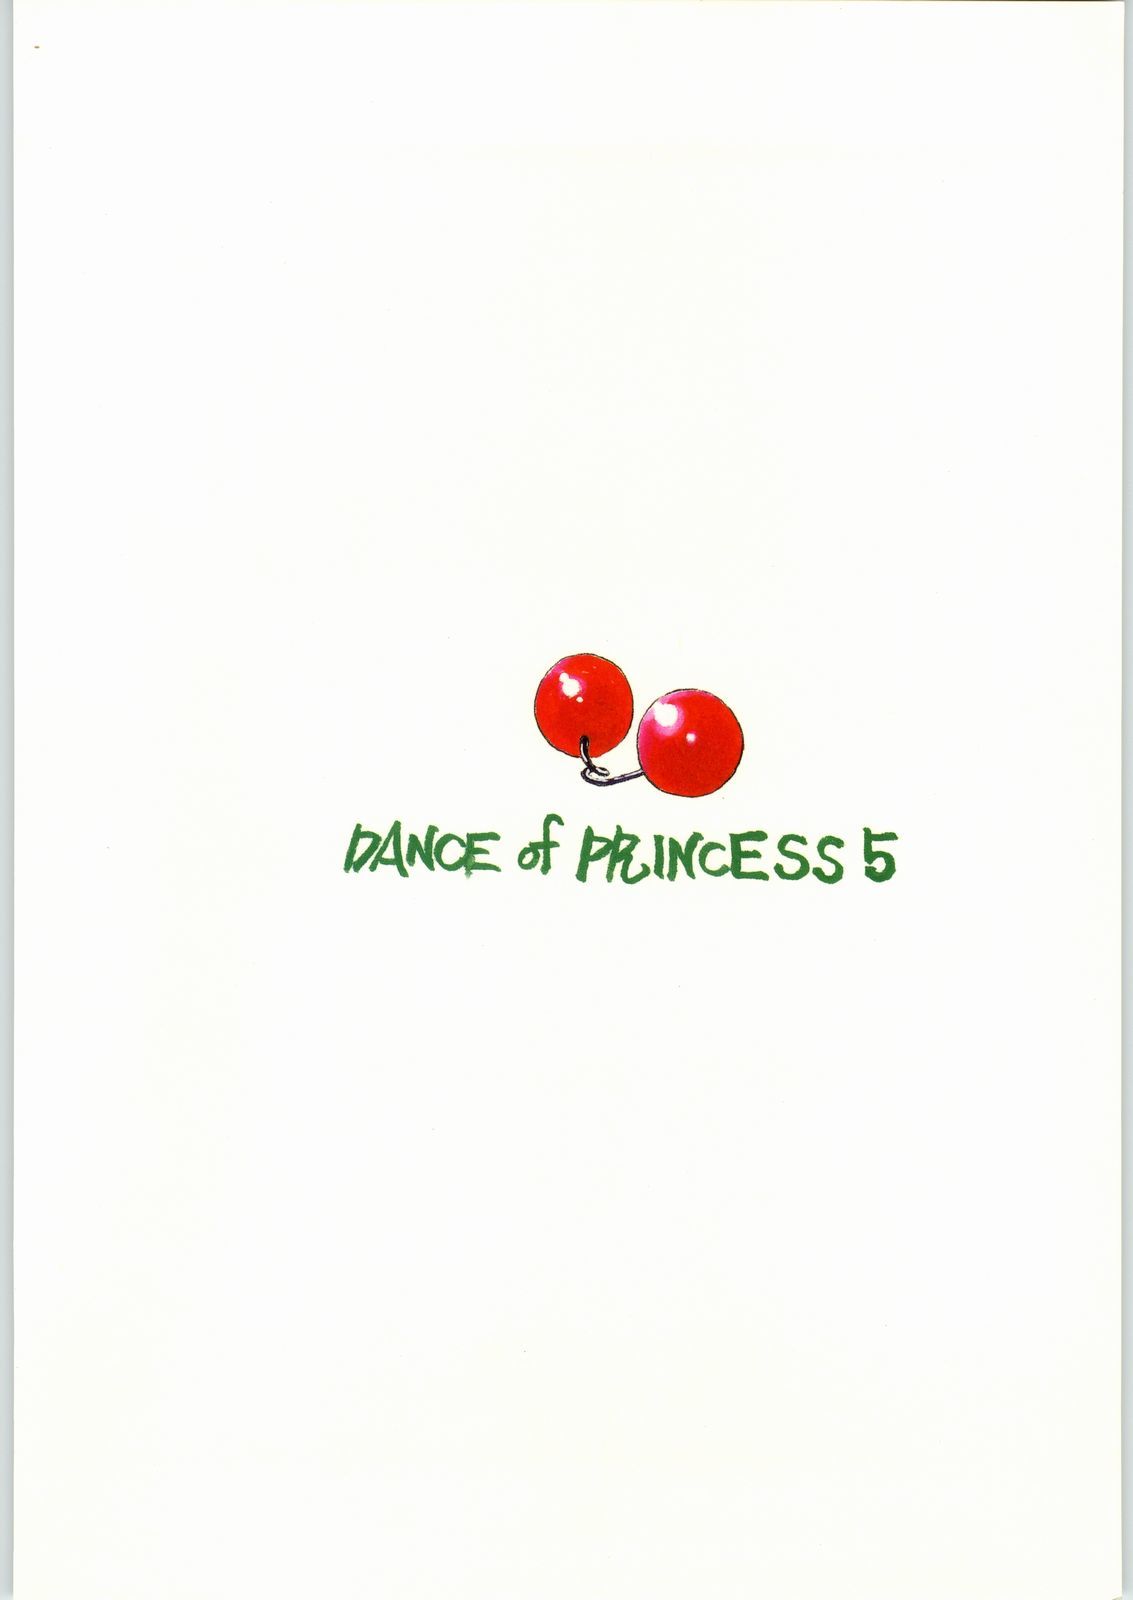 プリンセス5のダンス